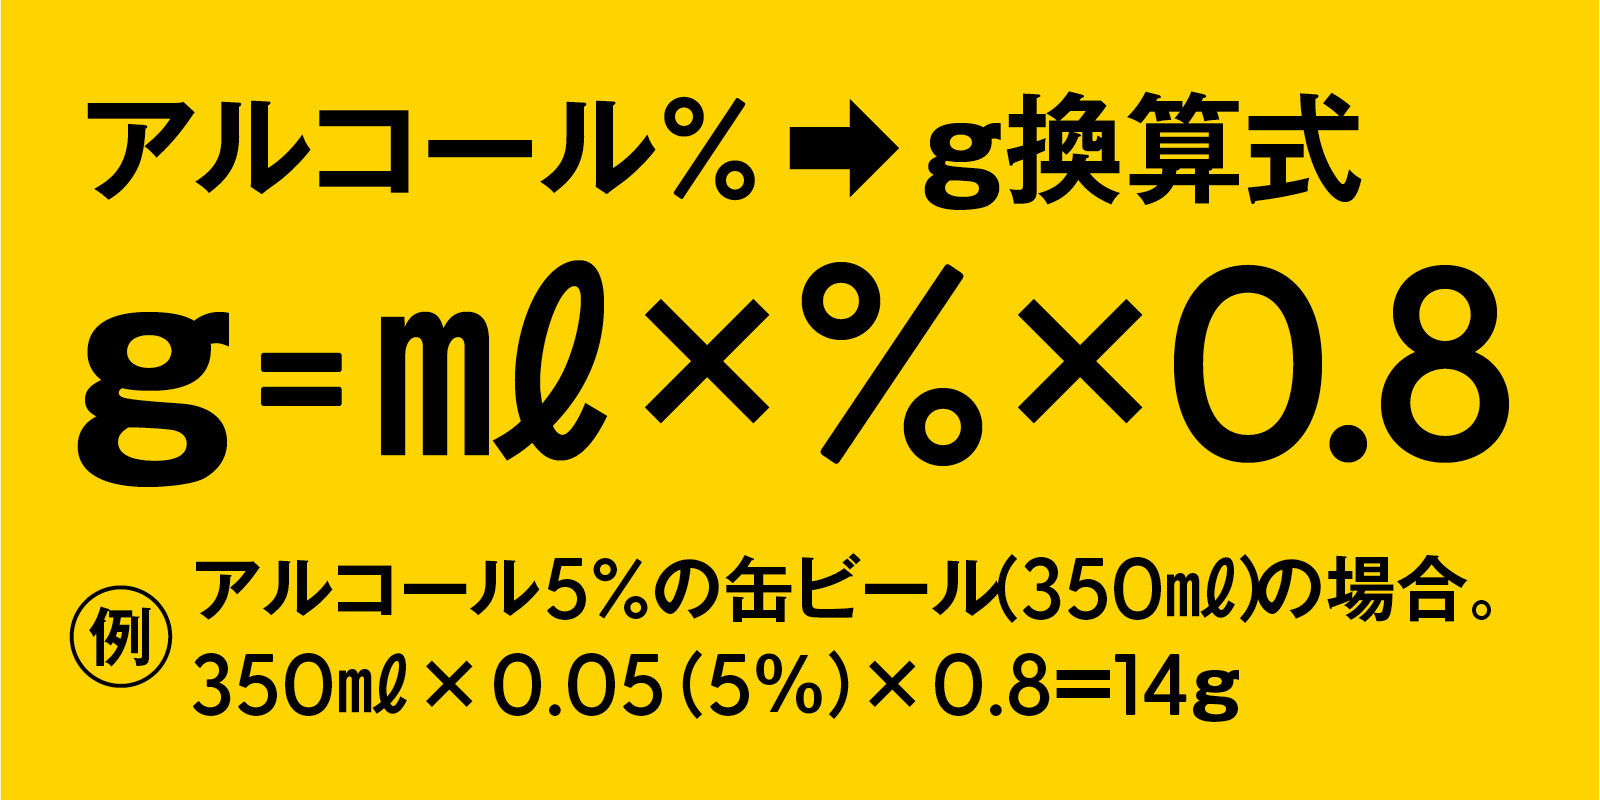 日本の％表記からアルコール量を計算 アルコール 適量